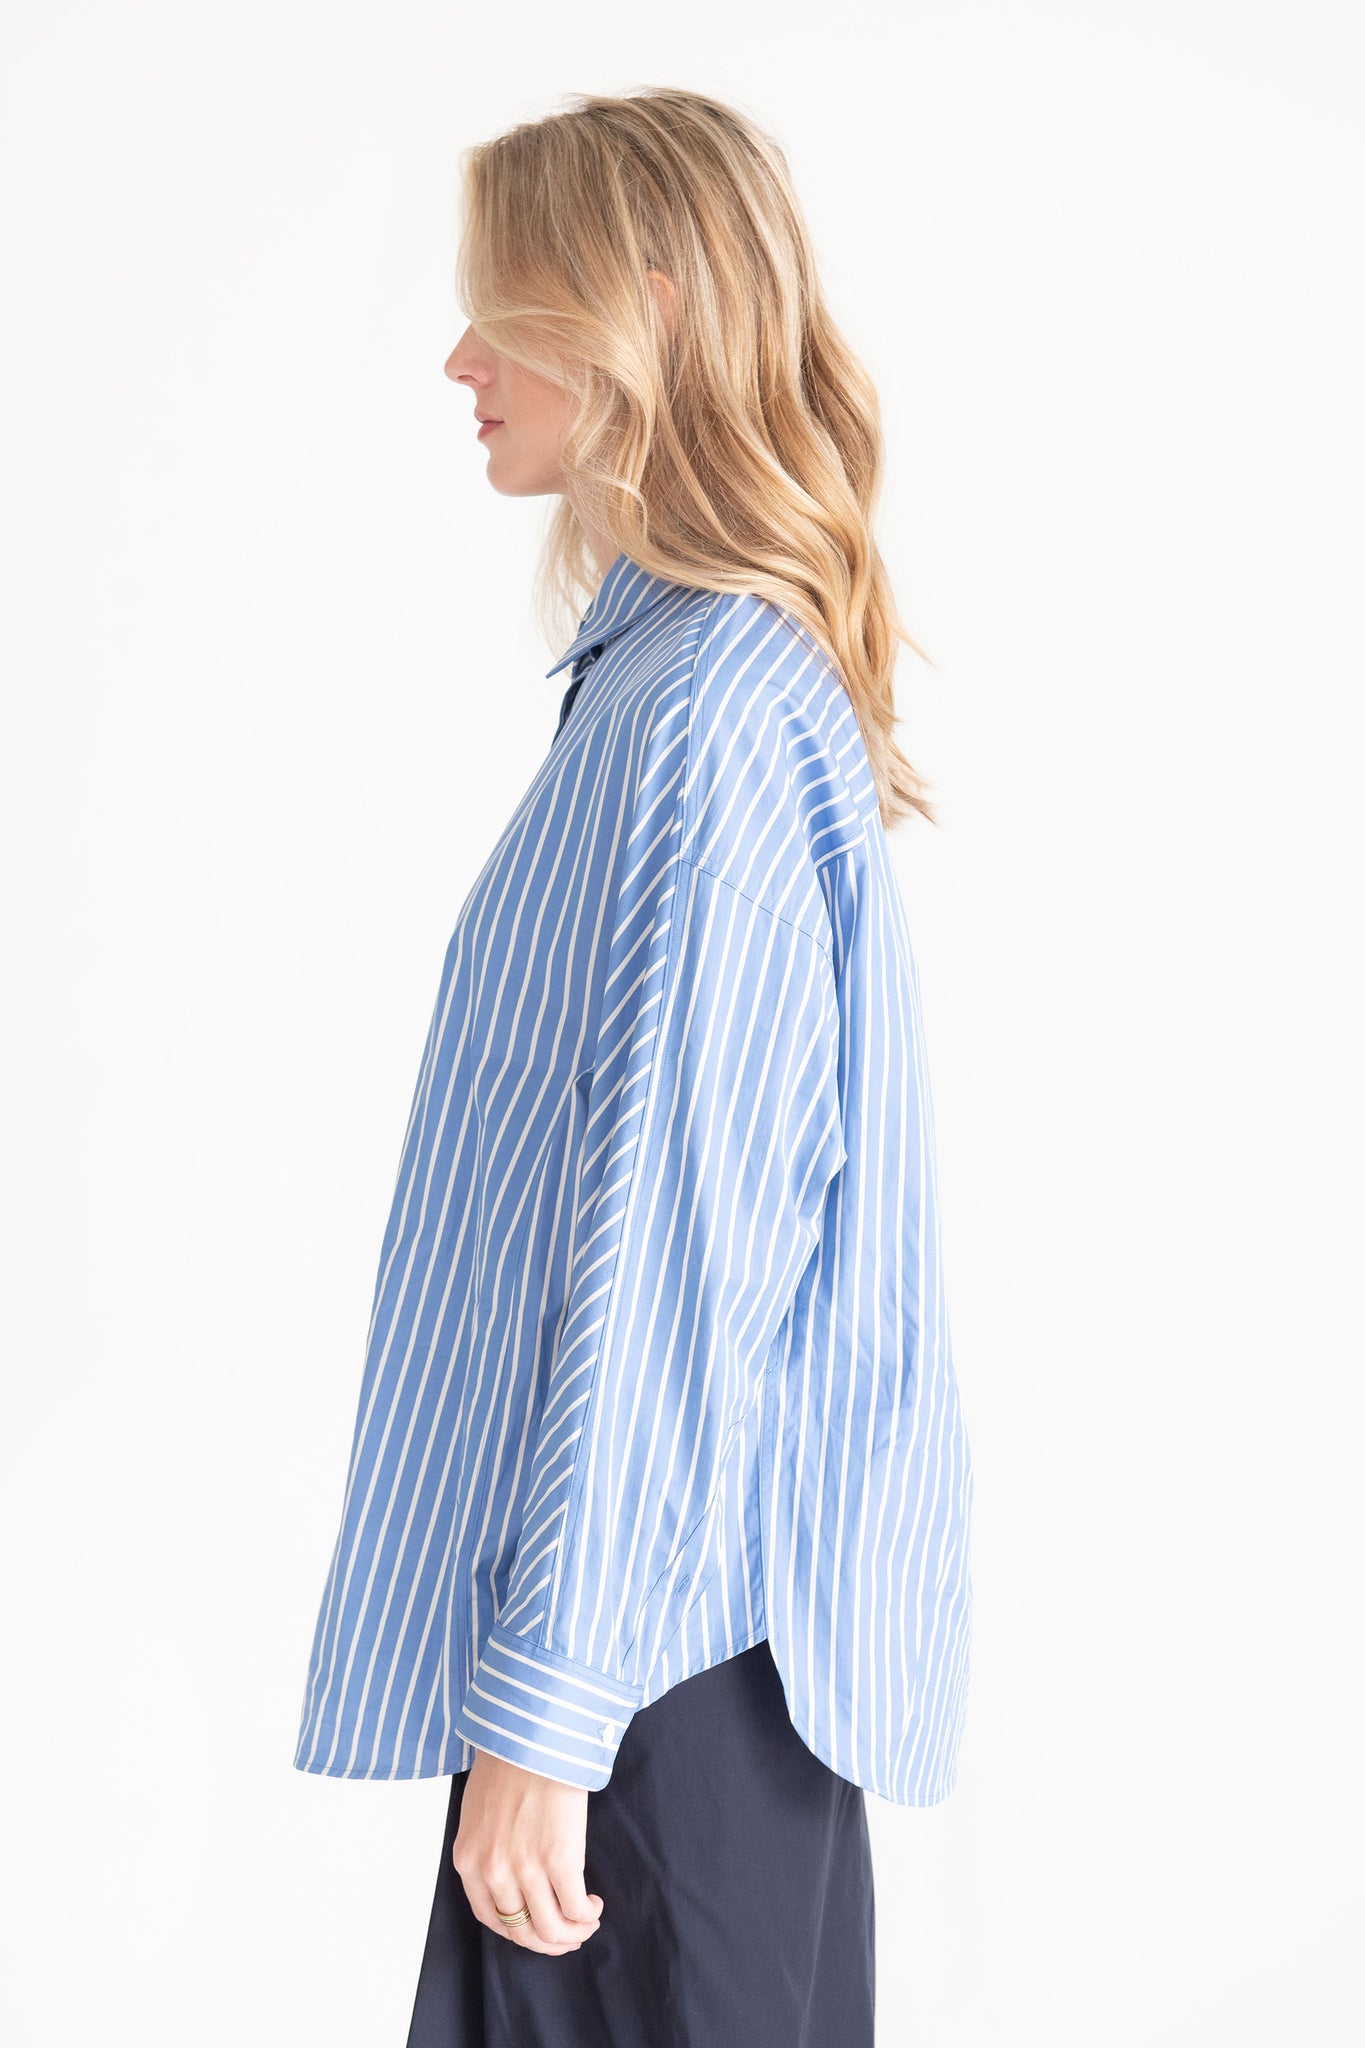 DRIES VAN NOTEN - Stripe Shirt, Light Blue